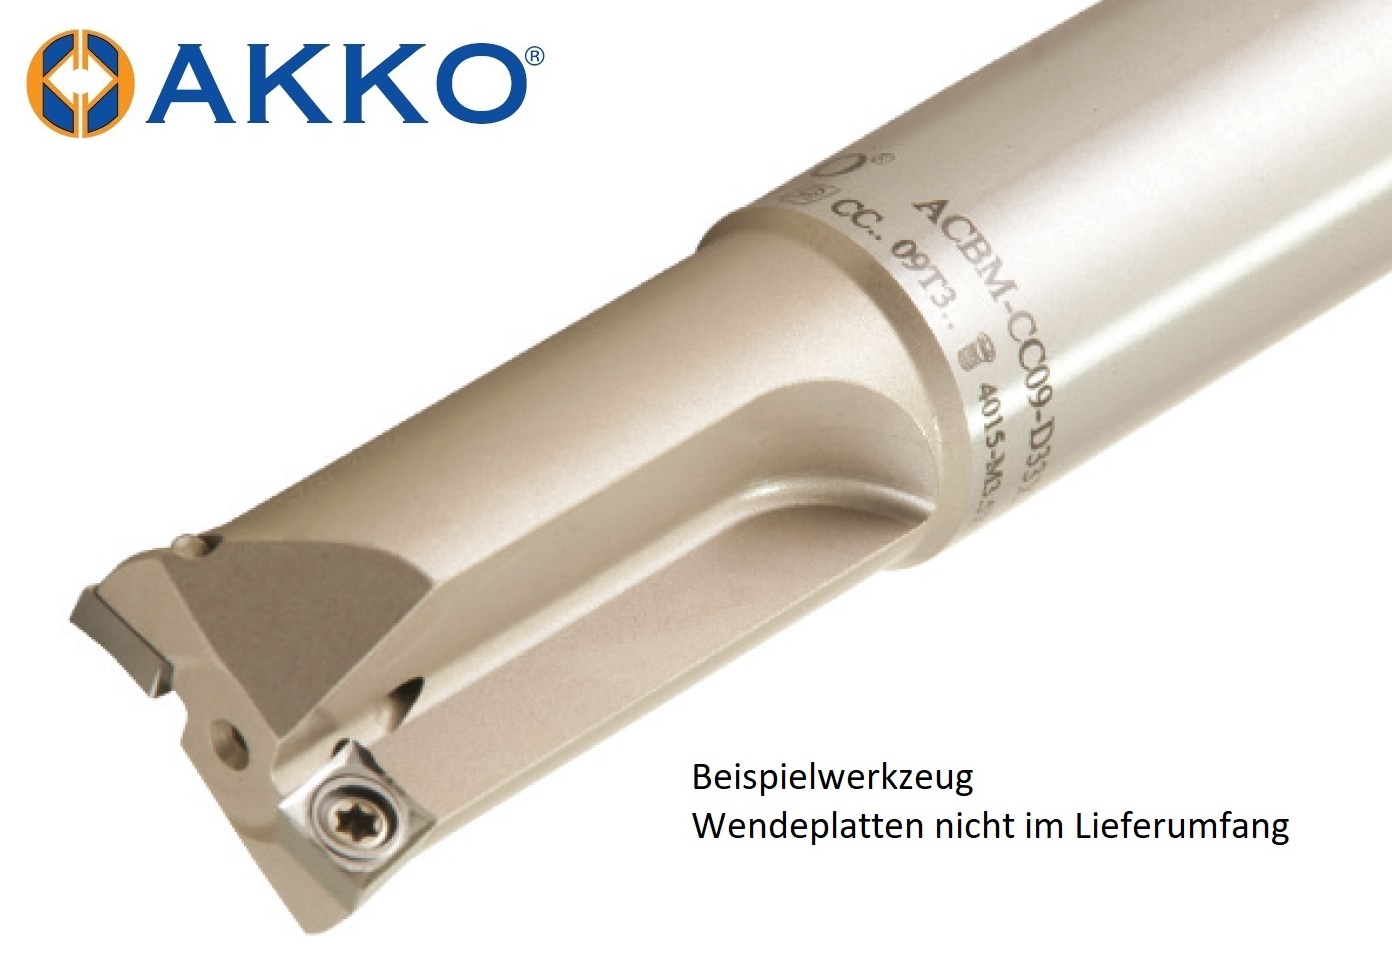 AKKO-Senkfräser für -, kompatibel mit ISO CC.. 060204
ø 17 mm, Z=2, ohne Innenkühlung